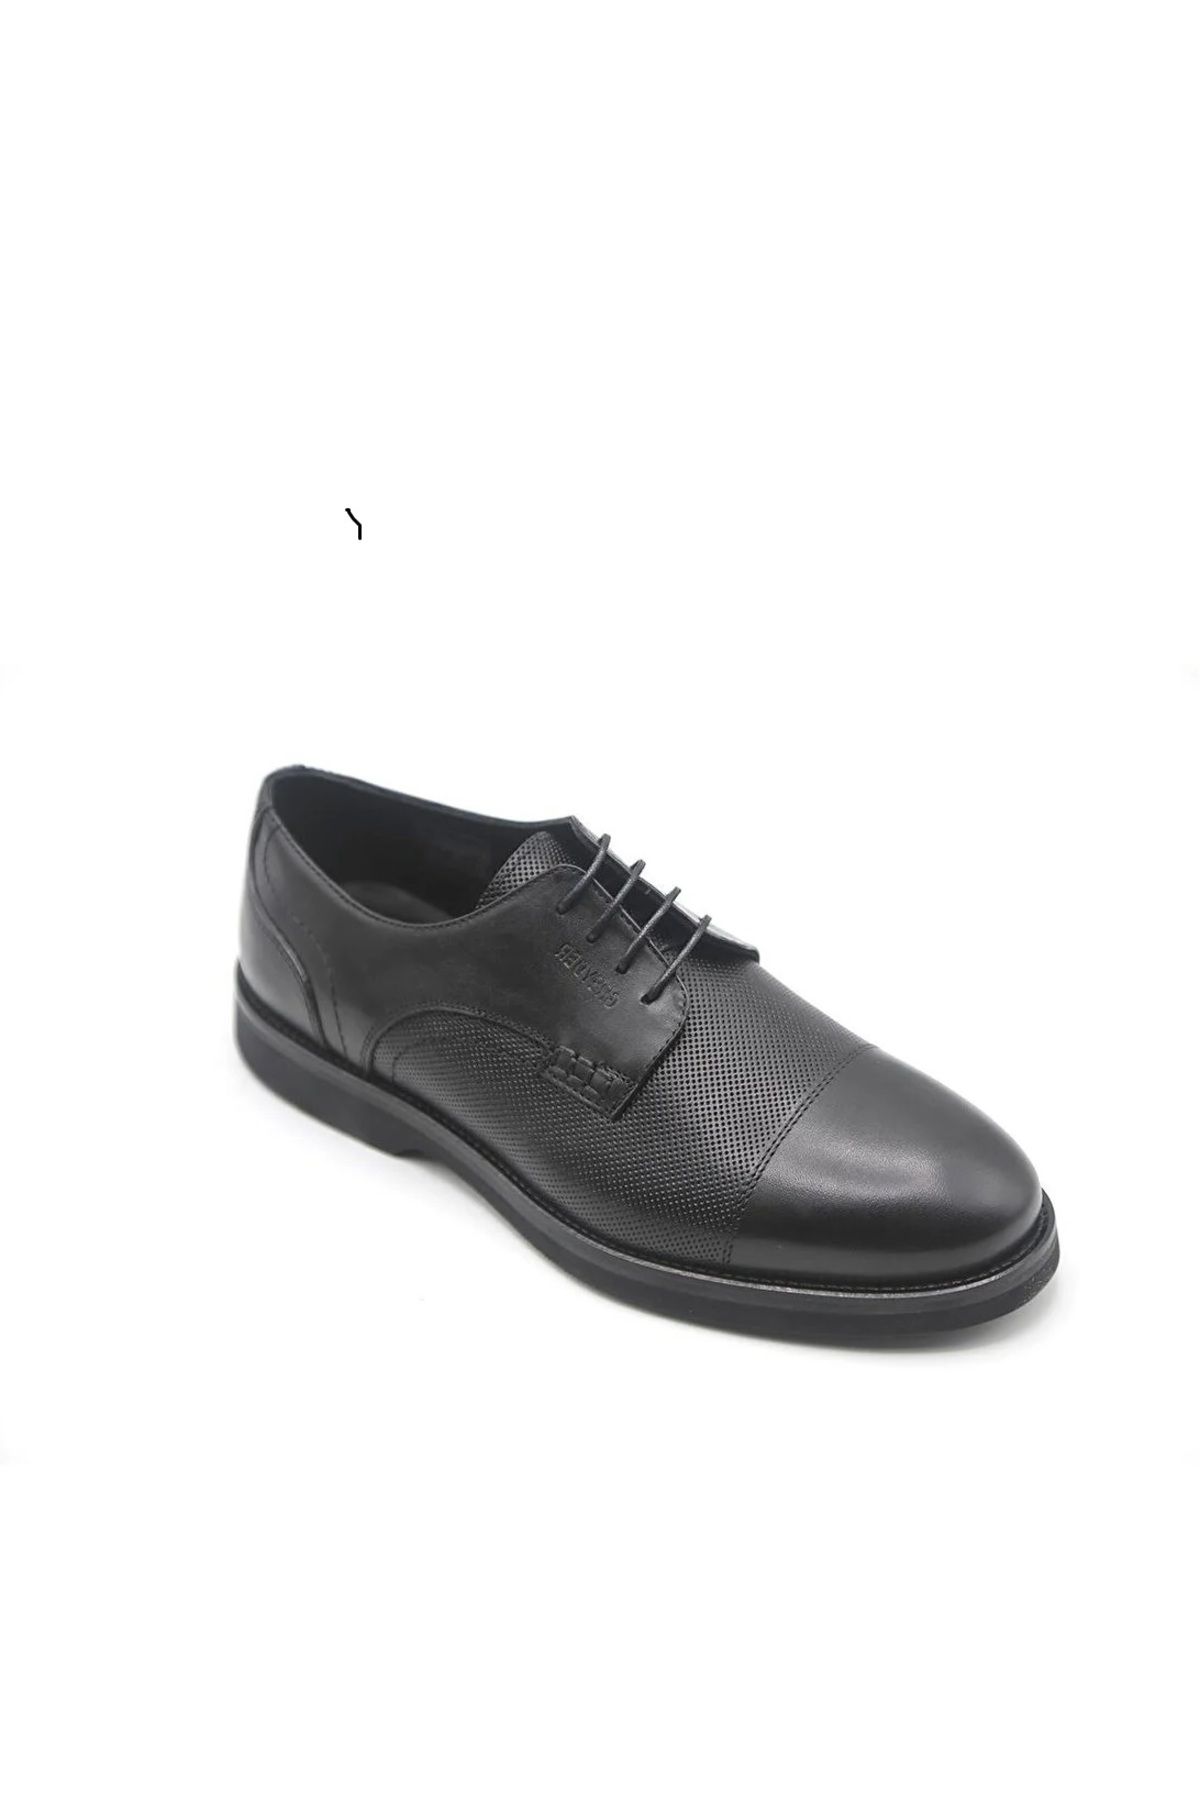 Greyder Erkek Siyah Hakiki Deri Eva Taban Klasik Ayakkabı